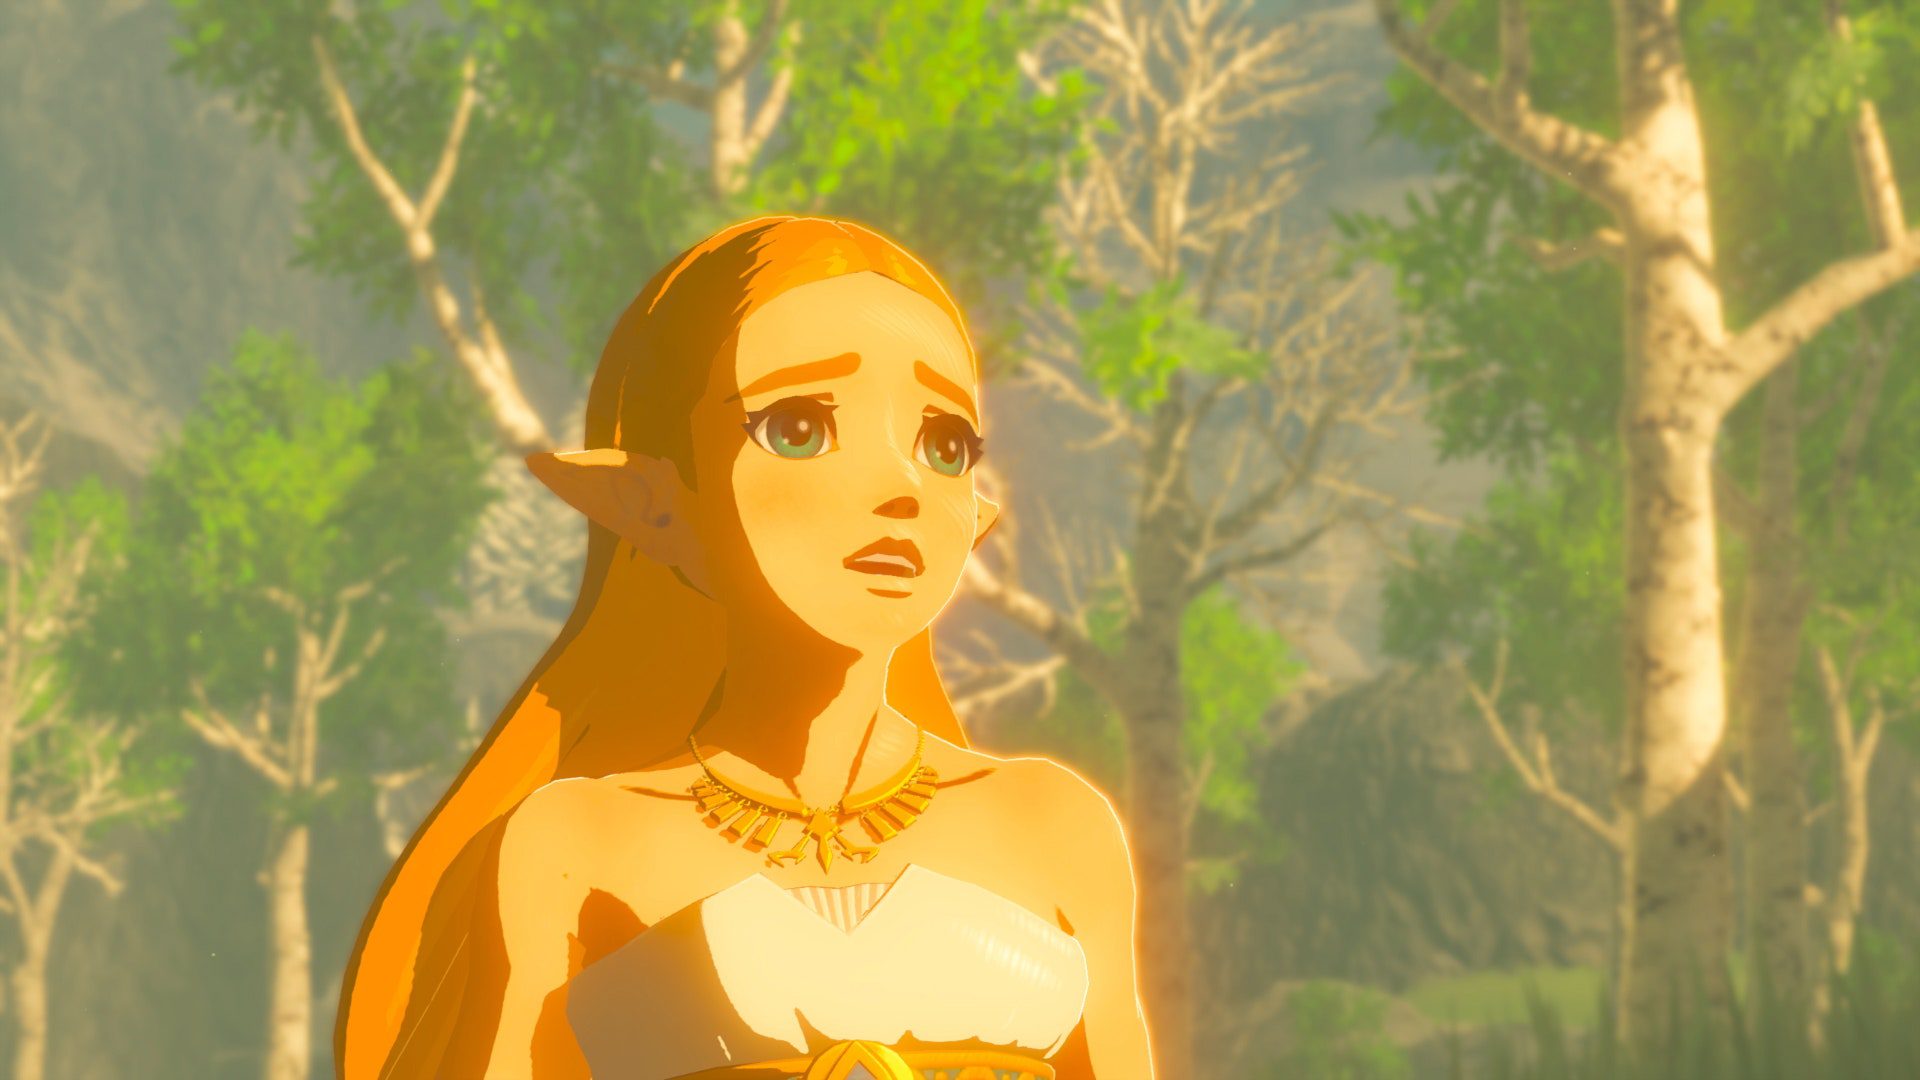 Zelda in Breath of the Wild